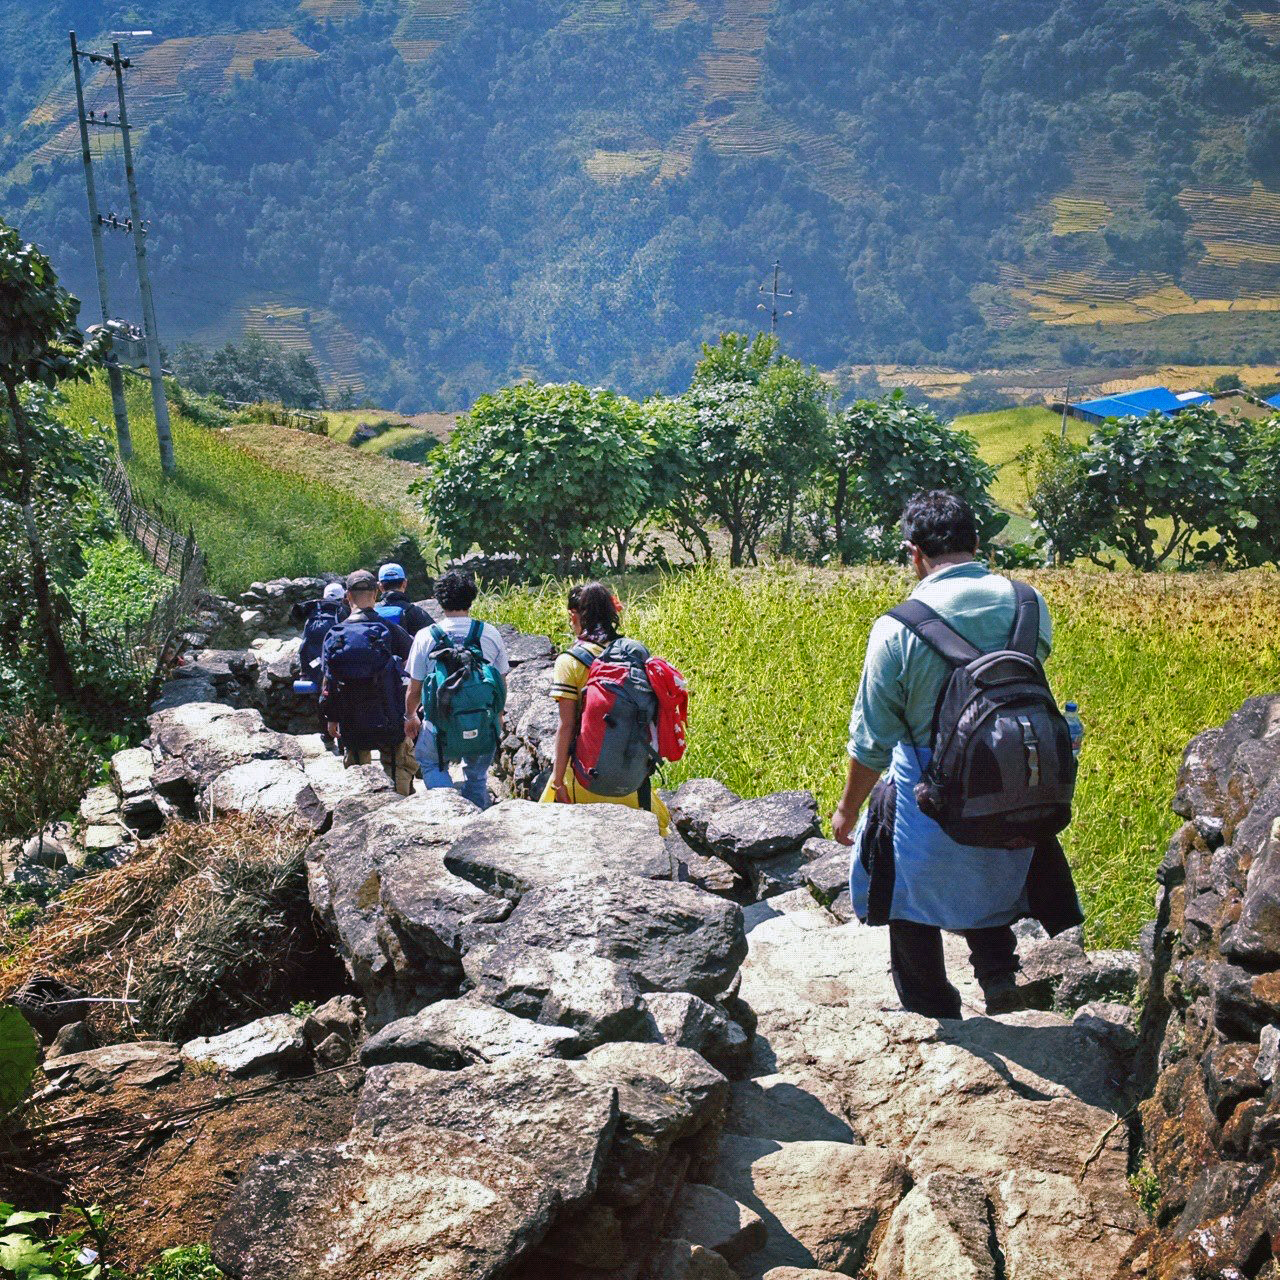 Trekking in Annapurna region